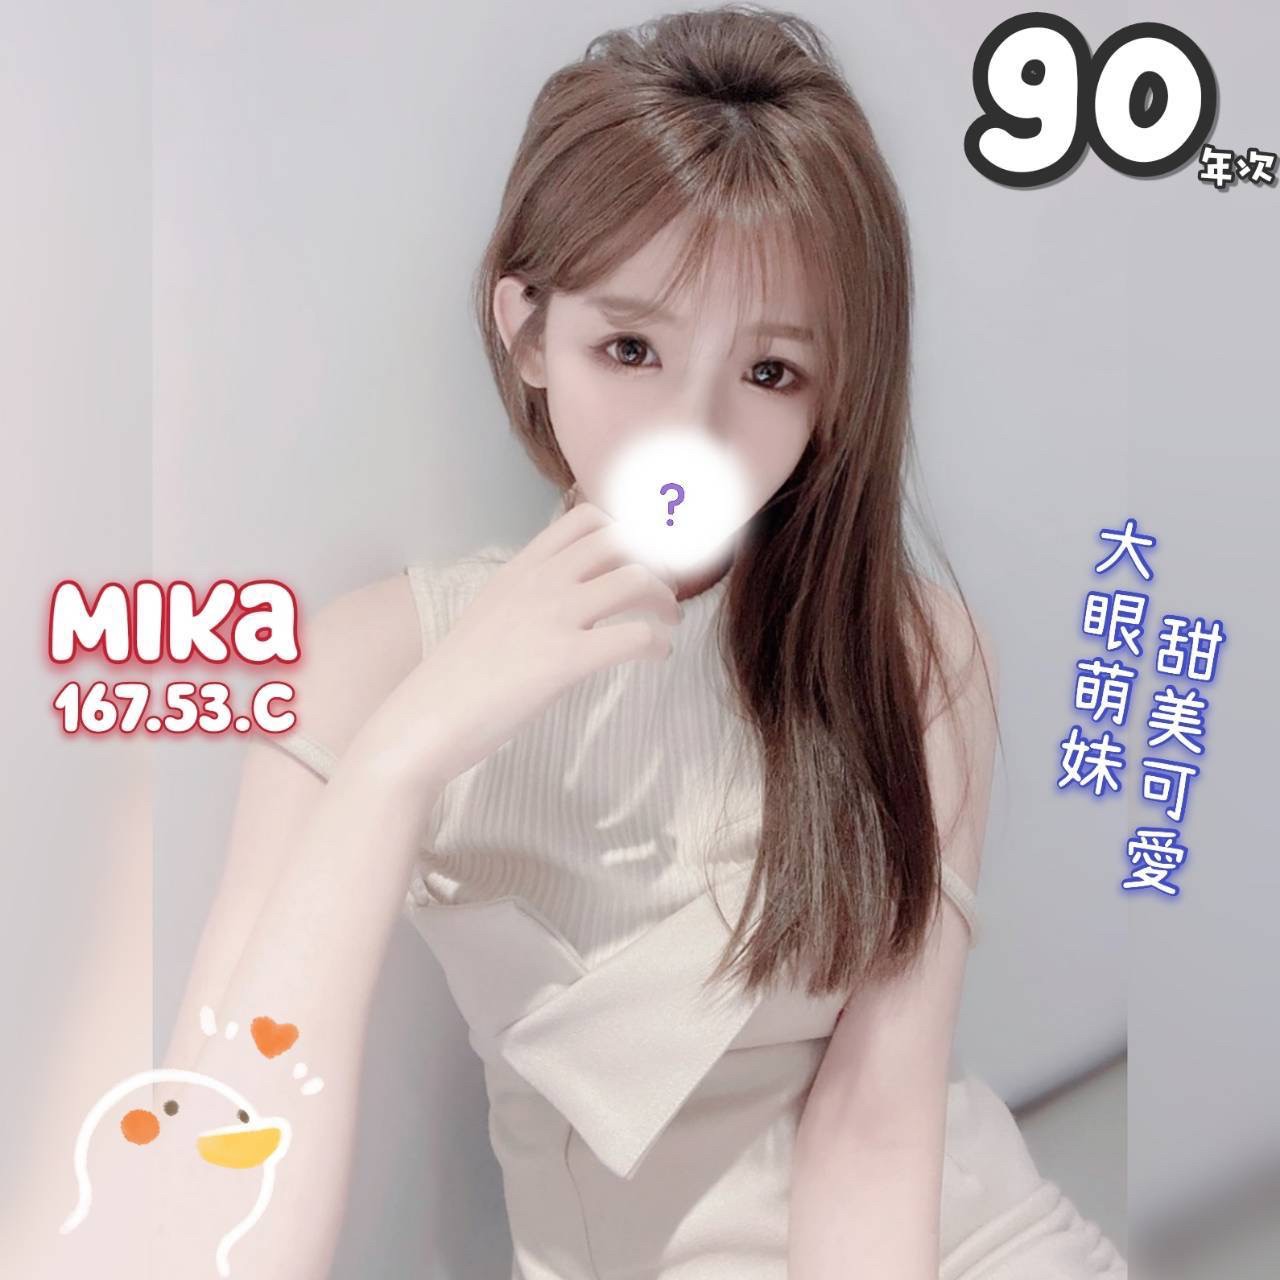 台北手工桑拿按摩-鑽石甜美型按摩師 Mika 167/53/C